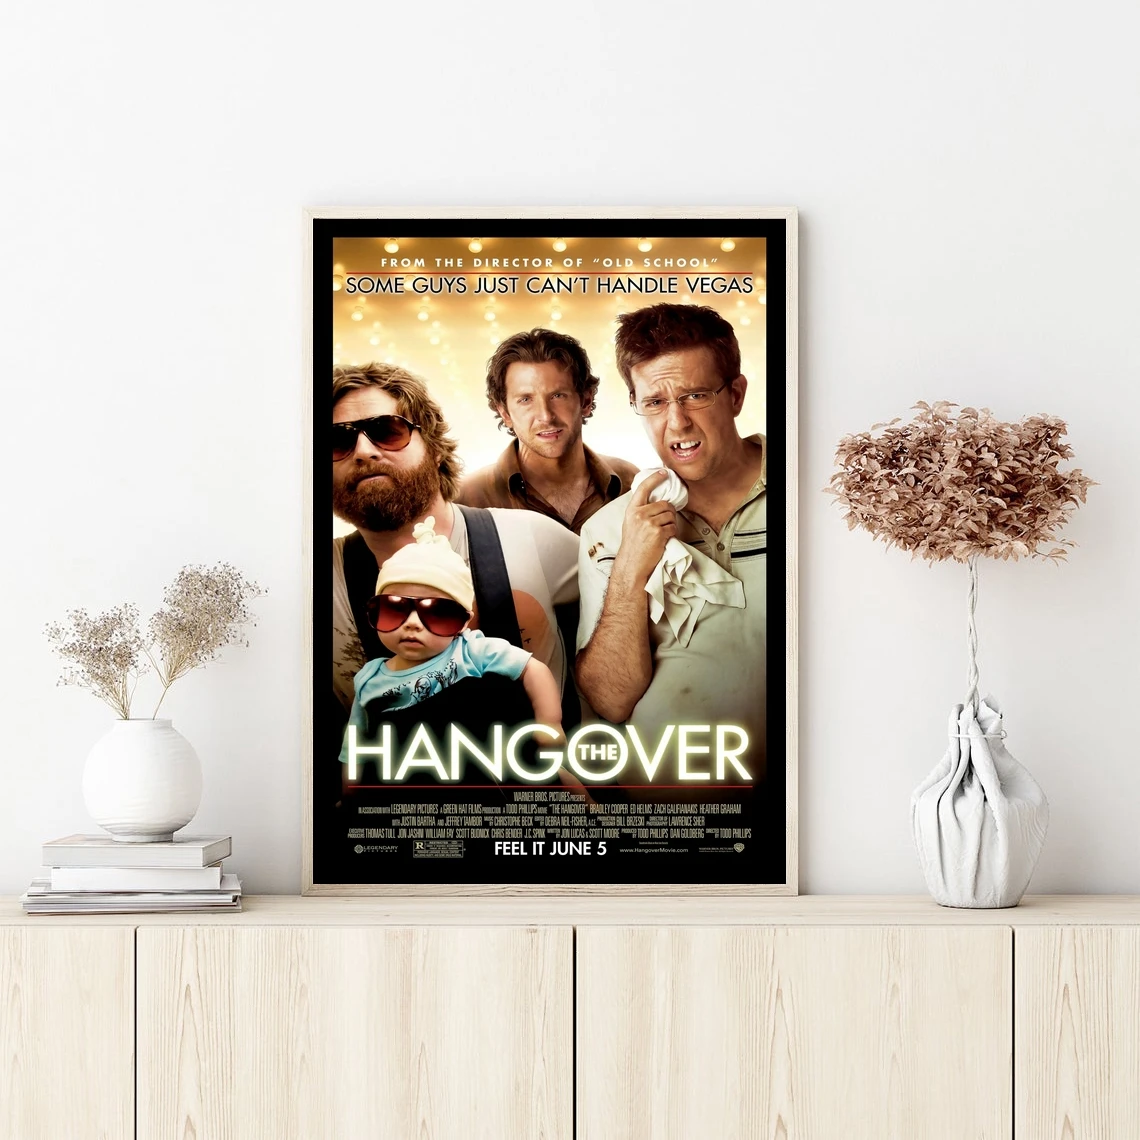 

Hangover обложка фильма постер настенная Картина на холсте спальня гостиная домашний Декор (без рамки)